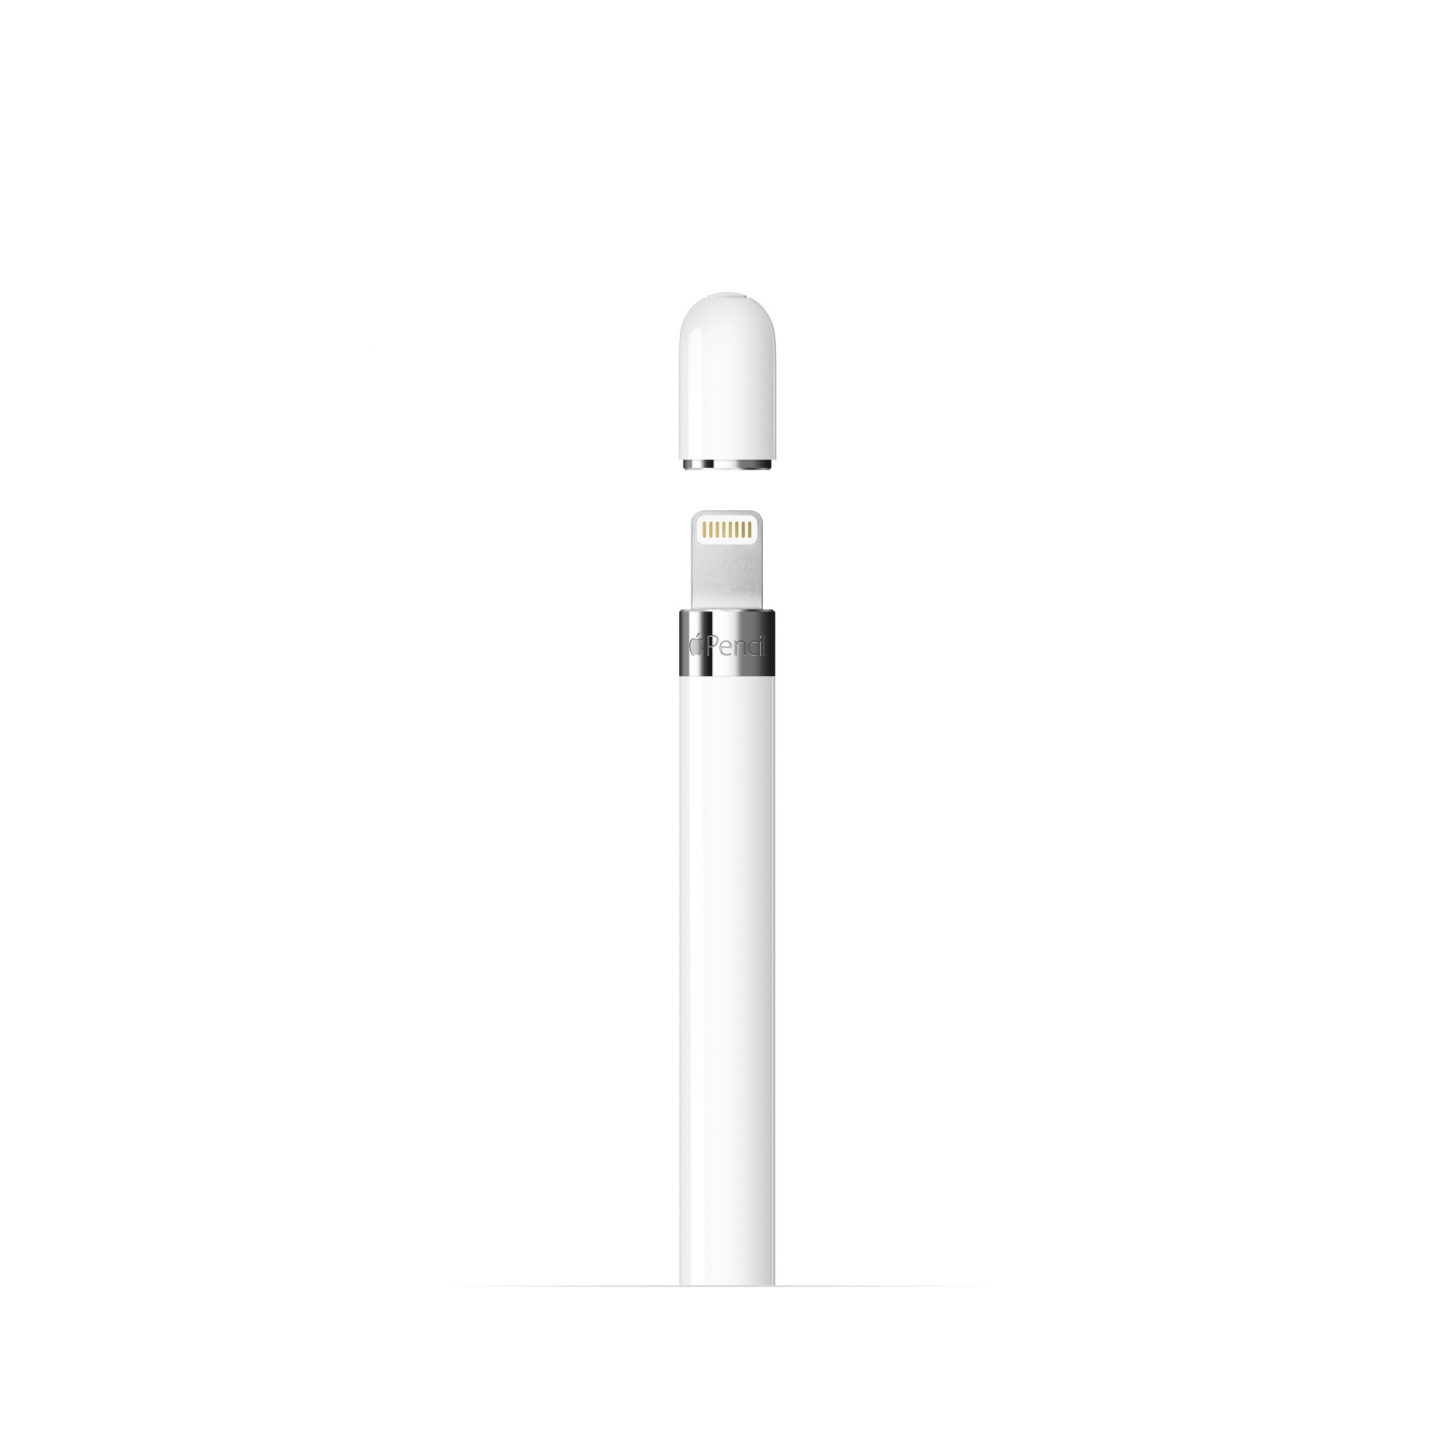 Compatibilità dell'iPad con Apple Pencil (USB-C)